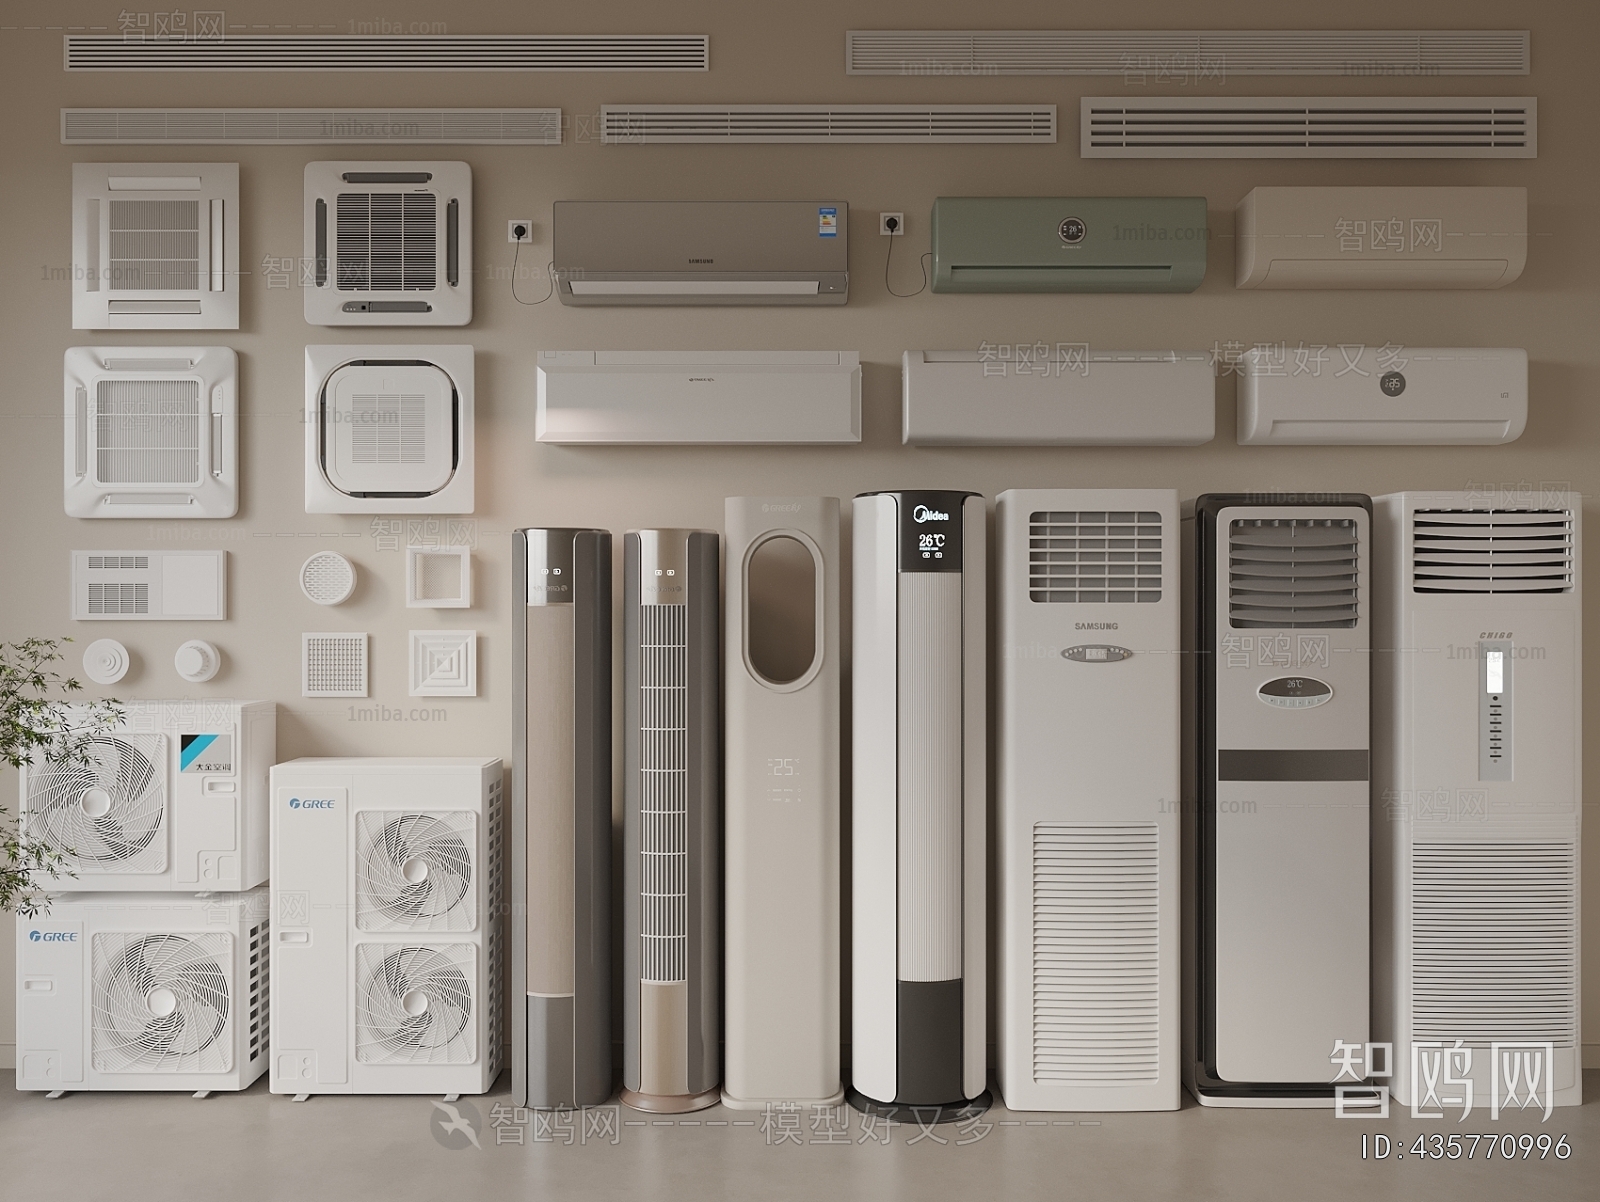 Modern Air Conditioner